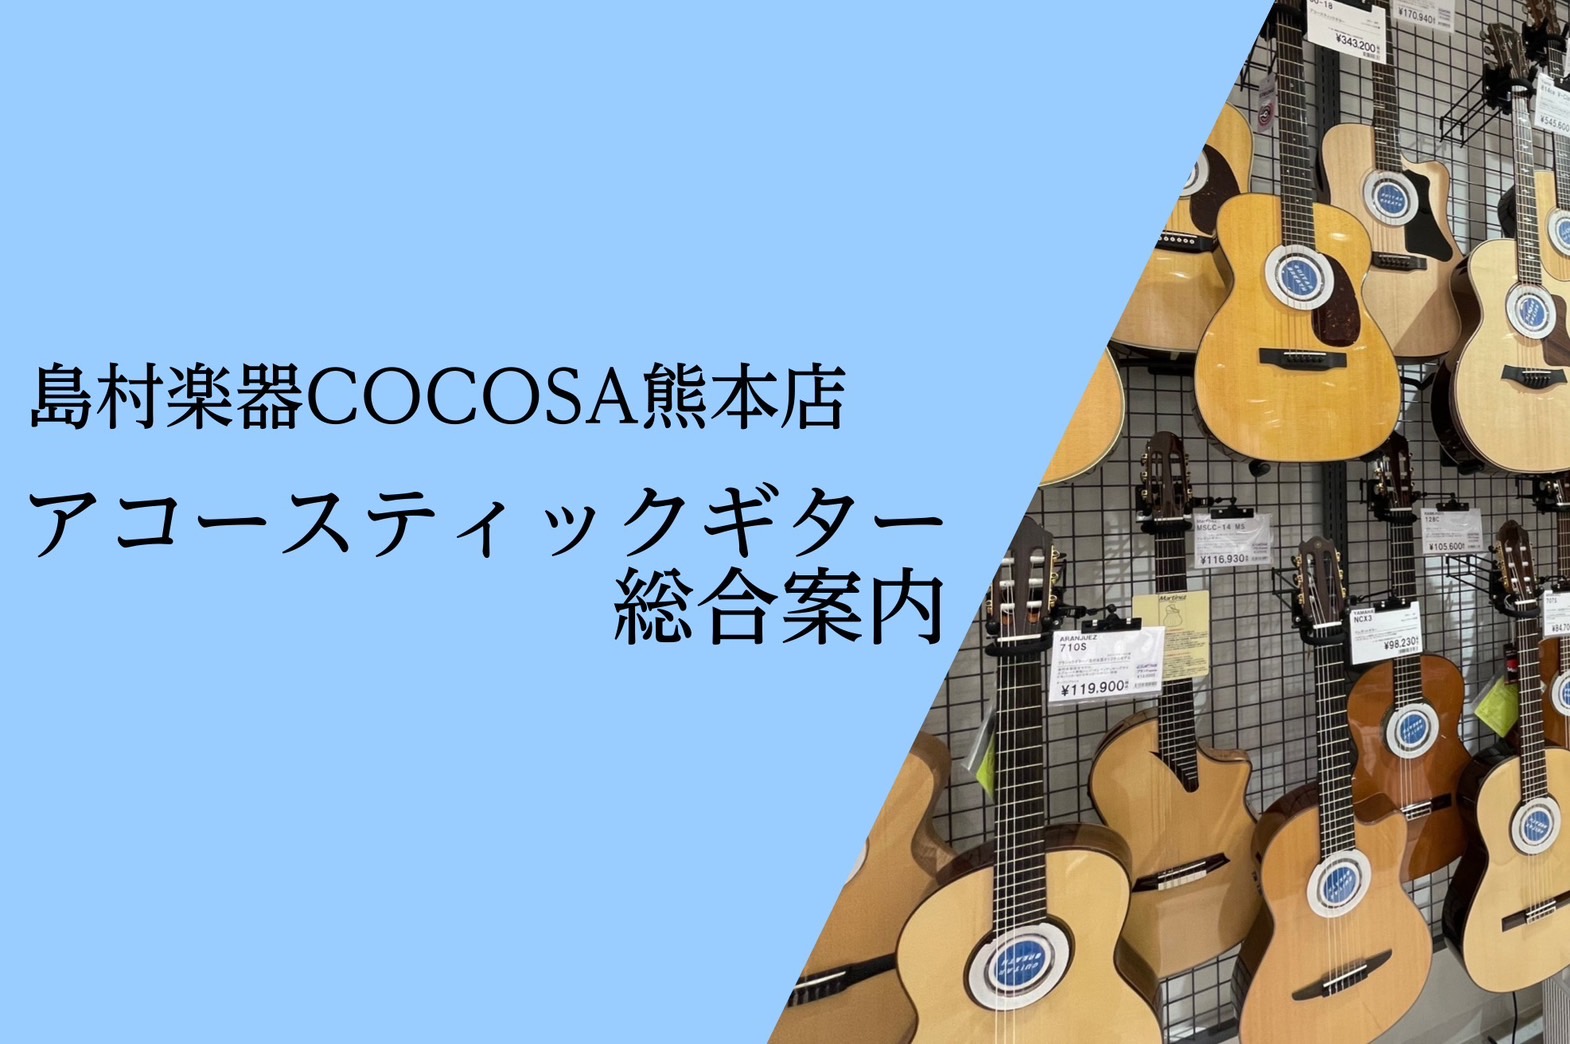 *アコースティックギター総合案内 熊本市内の繁華街、下通アーケードの「[!!COCOSA!!]」の3階に当店はございます。 ココサ熊本店では、これから始める方や長年演奏されている方まで様々なニーズにお応えできるよう、豊富な品揃えと、専門知識を持ったスタッフが皆様のアコギ選びを徹底サポートいたします。 […]